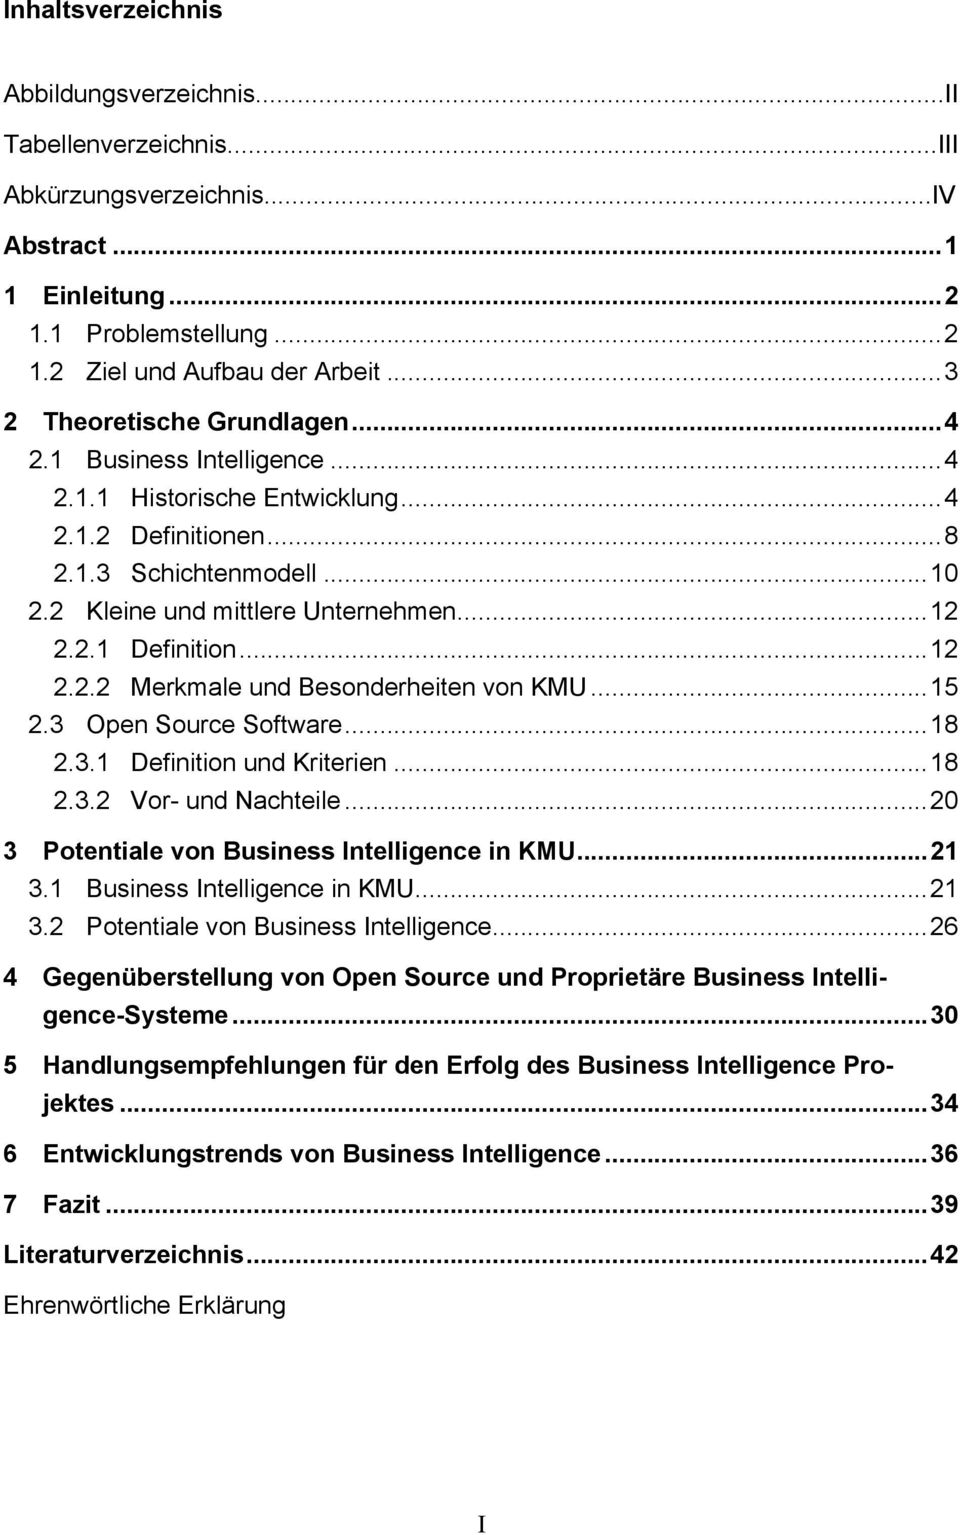 .. 12 2.2.2 Merkmale und Besonderheiten von KMU... 15 2.3 Open Source Software... 18 2.3.1 Definition und Kriterien... 18 2.3.2 Vor- und Nachteile... 20 3 Potentiale von Business Intelligence in KMU.